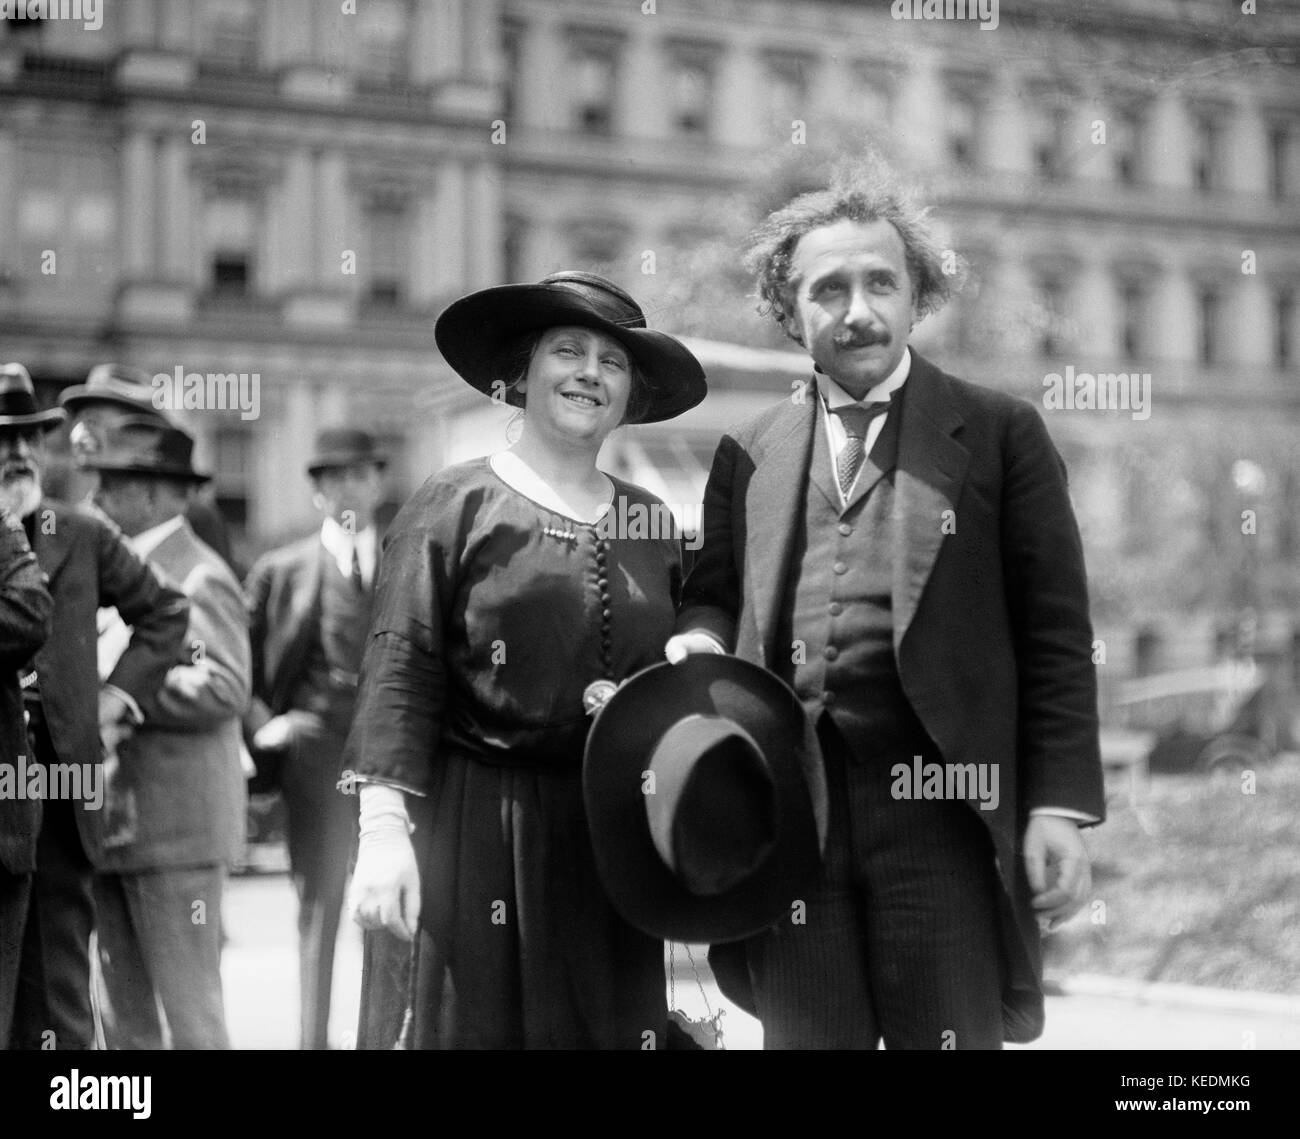 Albert Einstein mit seiner Frau Elsa, Staat, Krieg und navy Gebäude im Hintergrund, Washington DC, USA, Harris & Ewing, 1921 Stockfoto